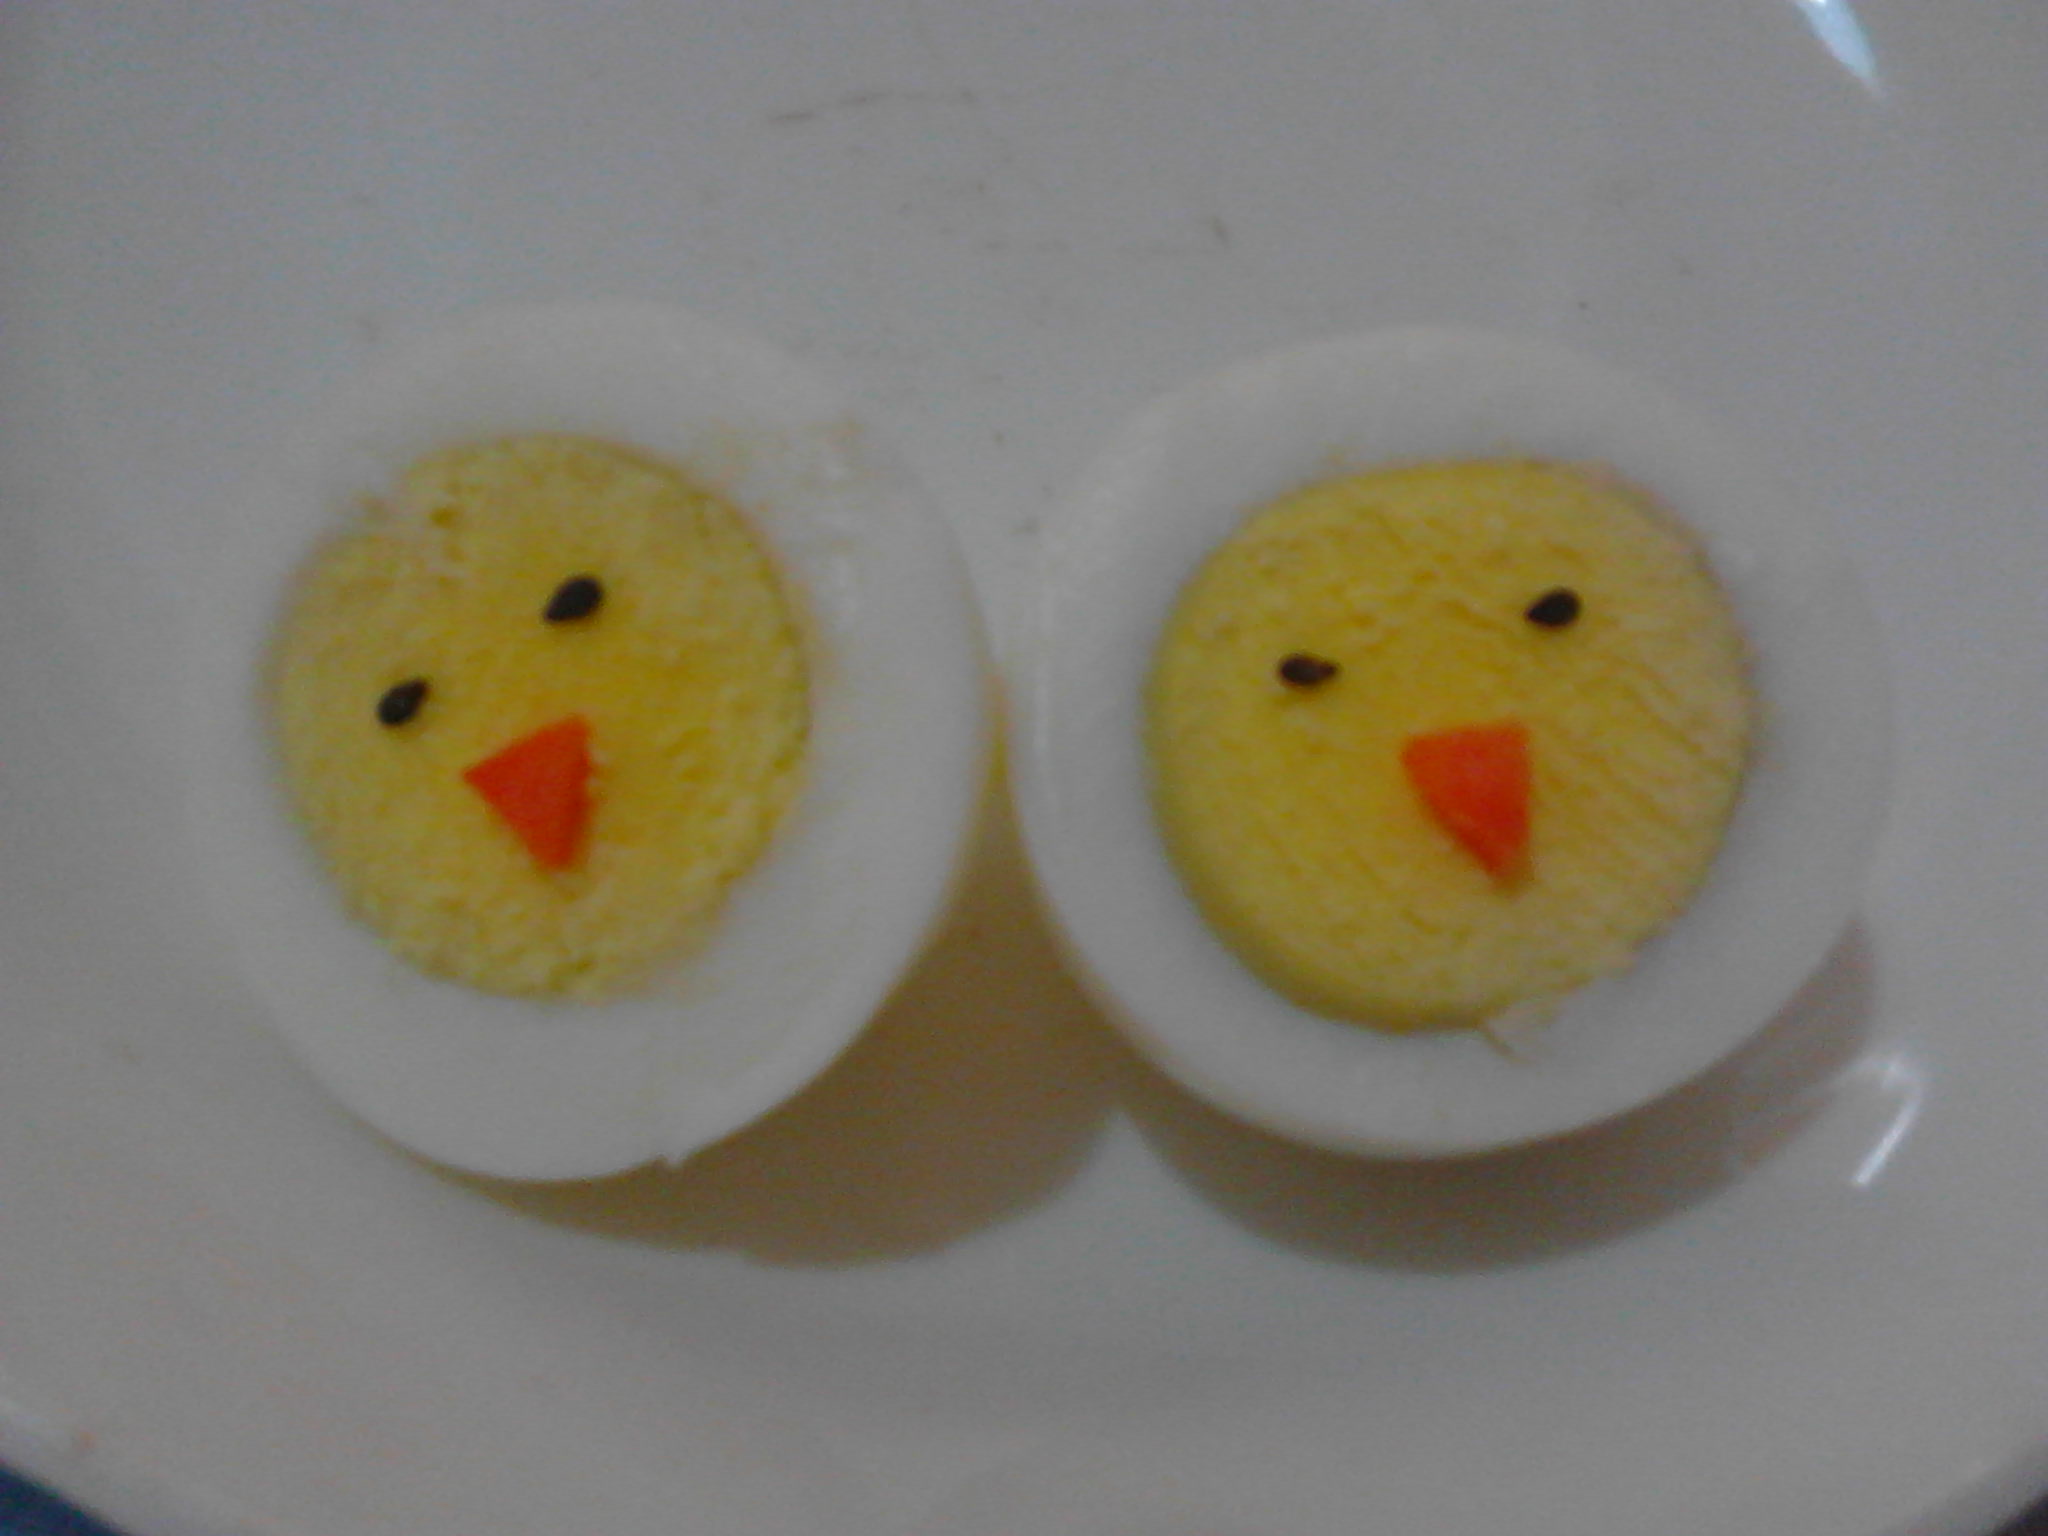 背景、顶视图上用油炸鸡蛋做的盘子制作的笑脸 库存图片. 图片 包括有 健康, 午餐, 眼睛, 食物, 生气勃勃 - 174780443